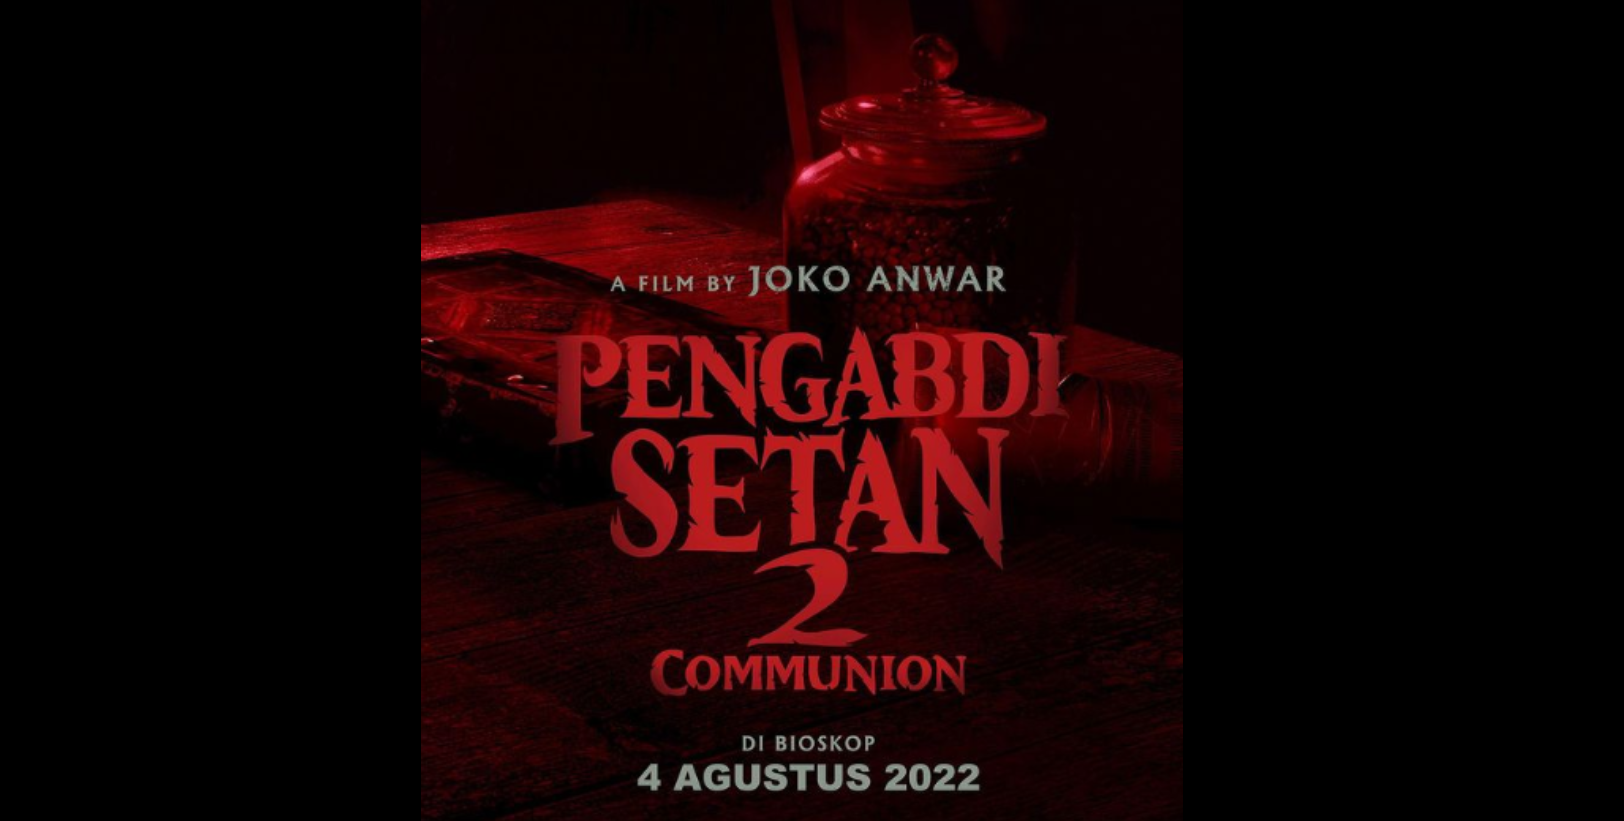 Ilustrasi Pengabdi Setan 2 Communion siap mengantui penonton di bioskop pada 4 Agustus 2022.(Foto: Istimewa)